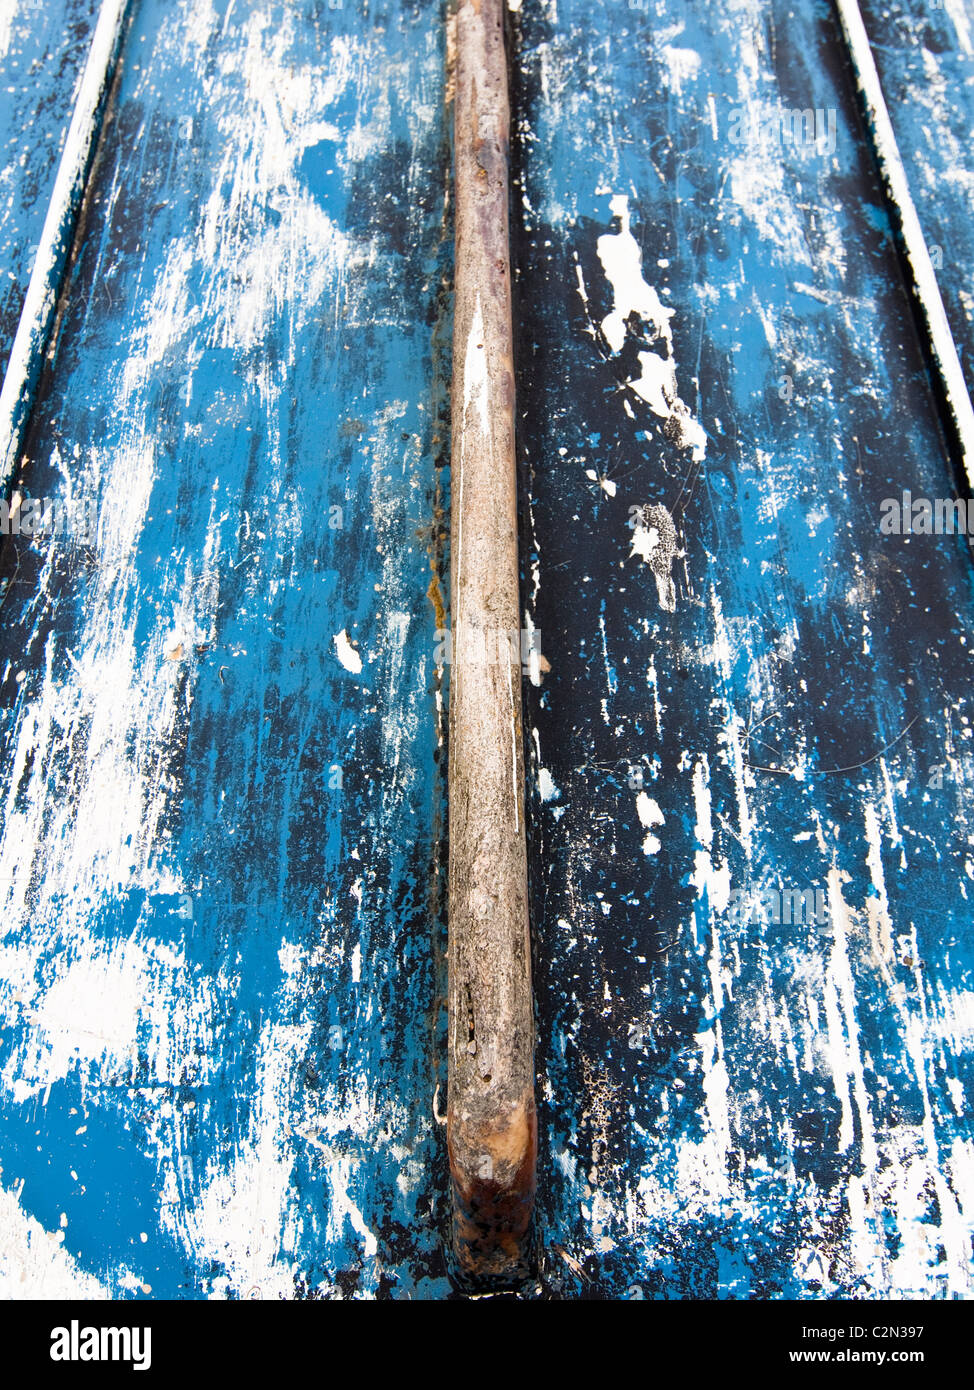 La coque bleu rayé d'un petit vieux bateau de pêche dans la région de Seatown, Dorset, UK. Banque D'Images